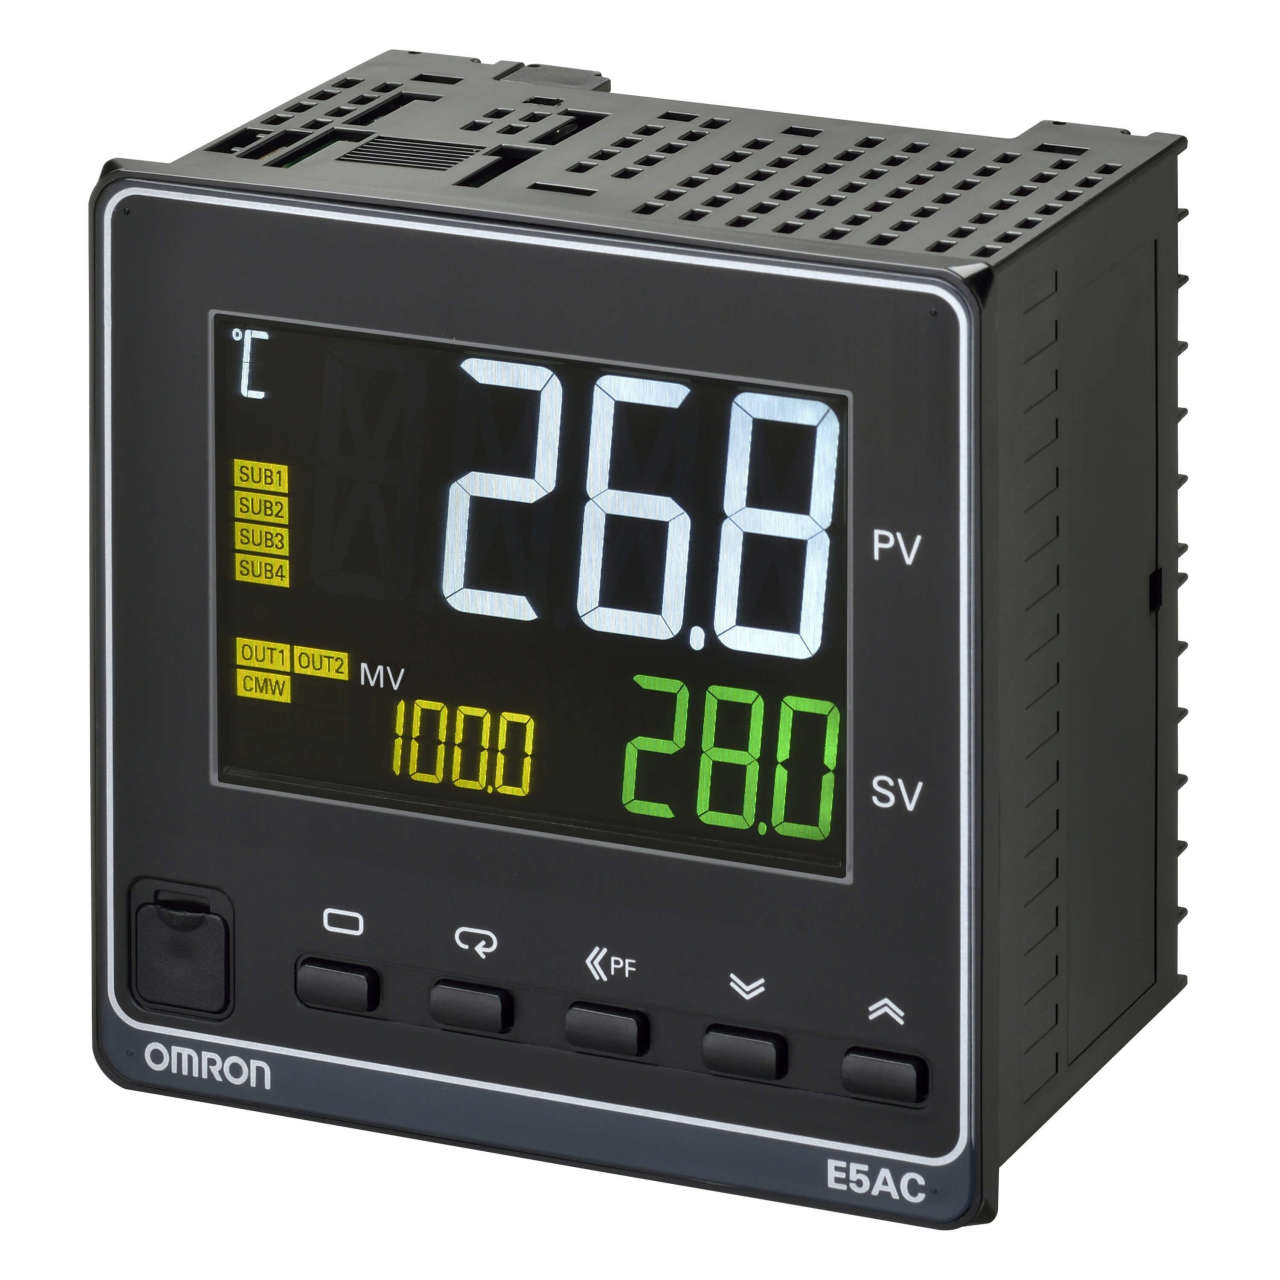 Omron - E5AC-CX4D5M-014  Sıcaklık kontrolörü; 1/4 DIN (96x96 mm); t/c & Pt100 & analog giriş;4 alarm çıkışı; 1 x 0-20/4-20mA akım çıkışı;4 event girişi;uzaktan set değeri;RS-485 haberleşme;24 VAC/DC